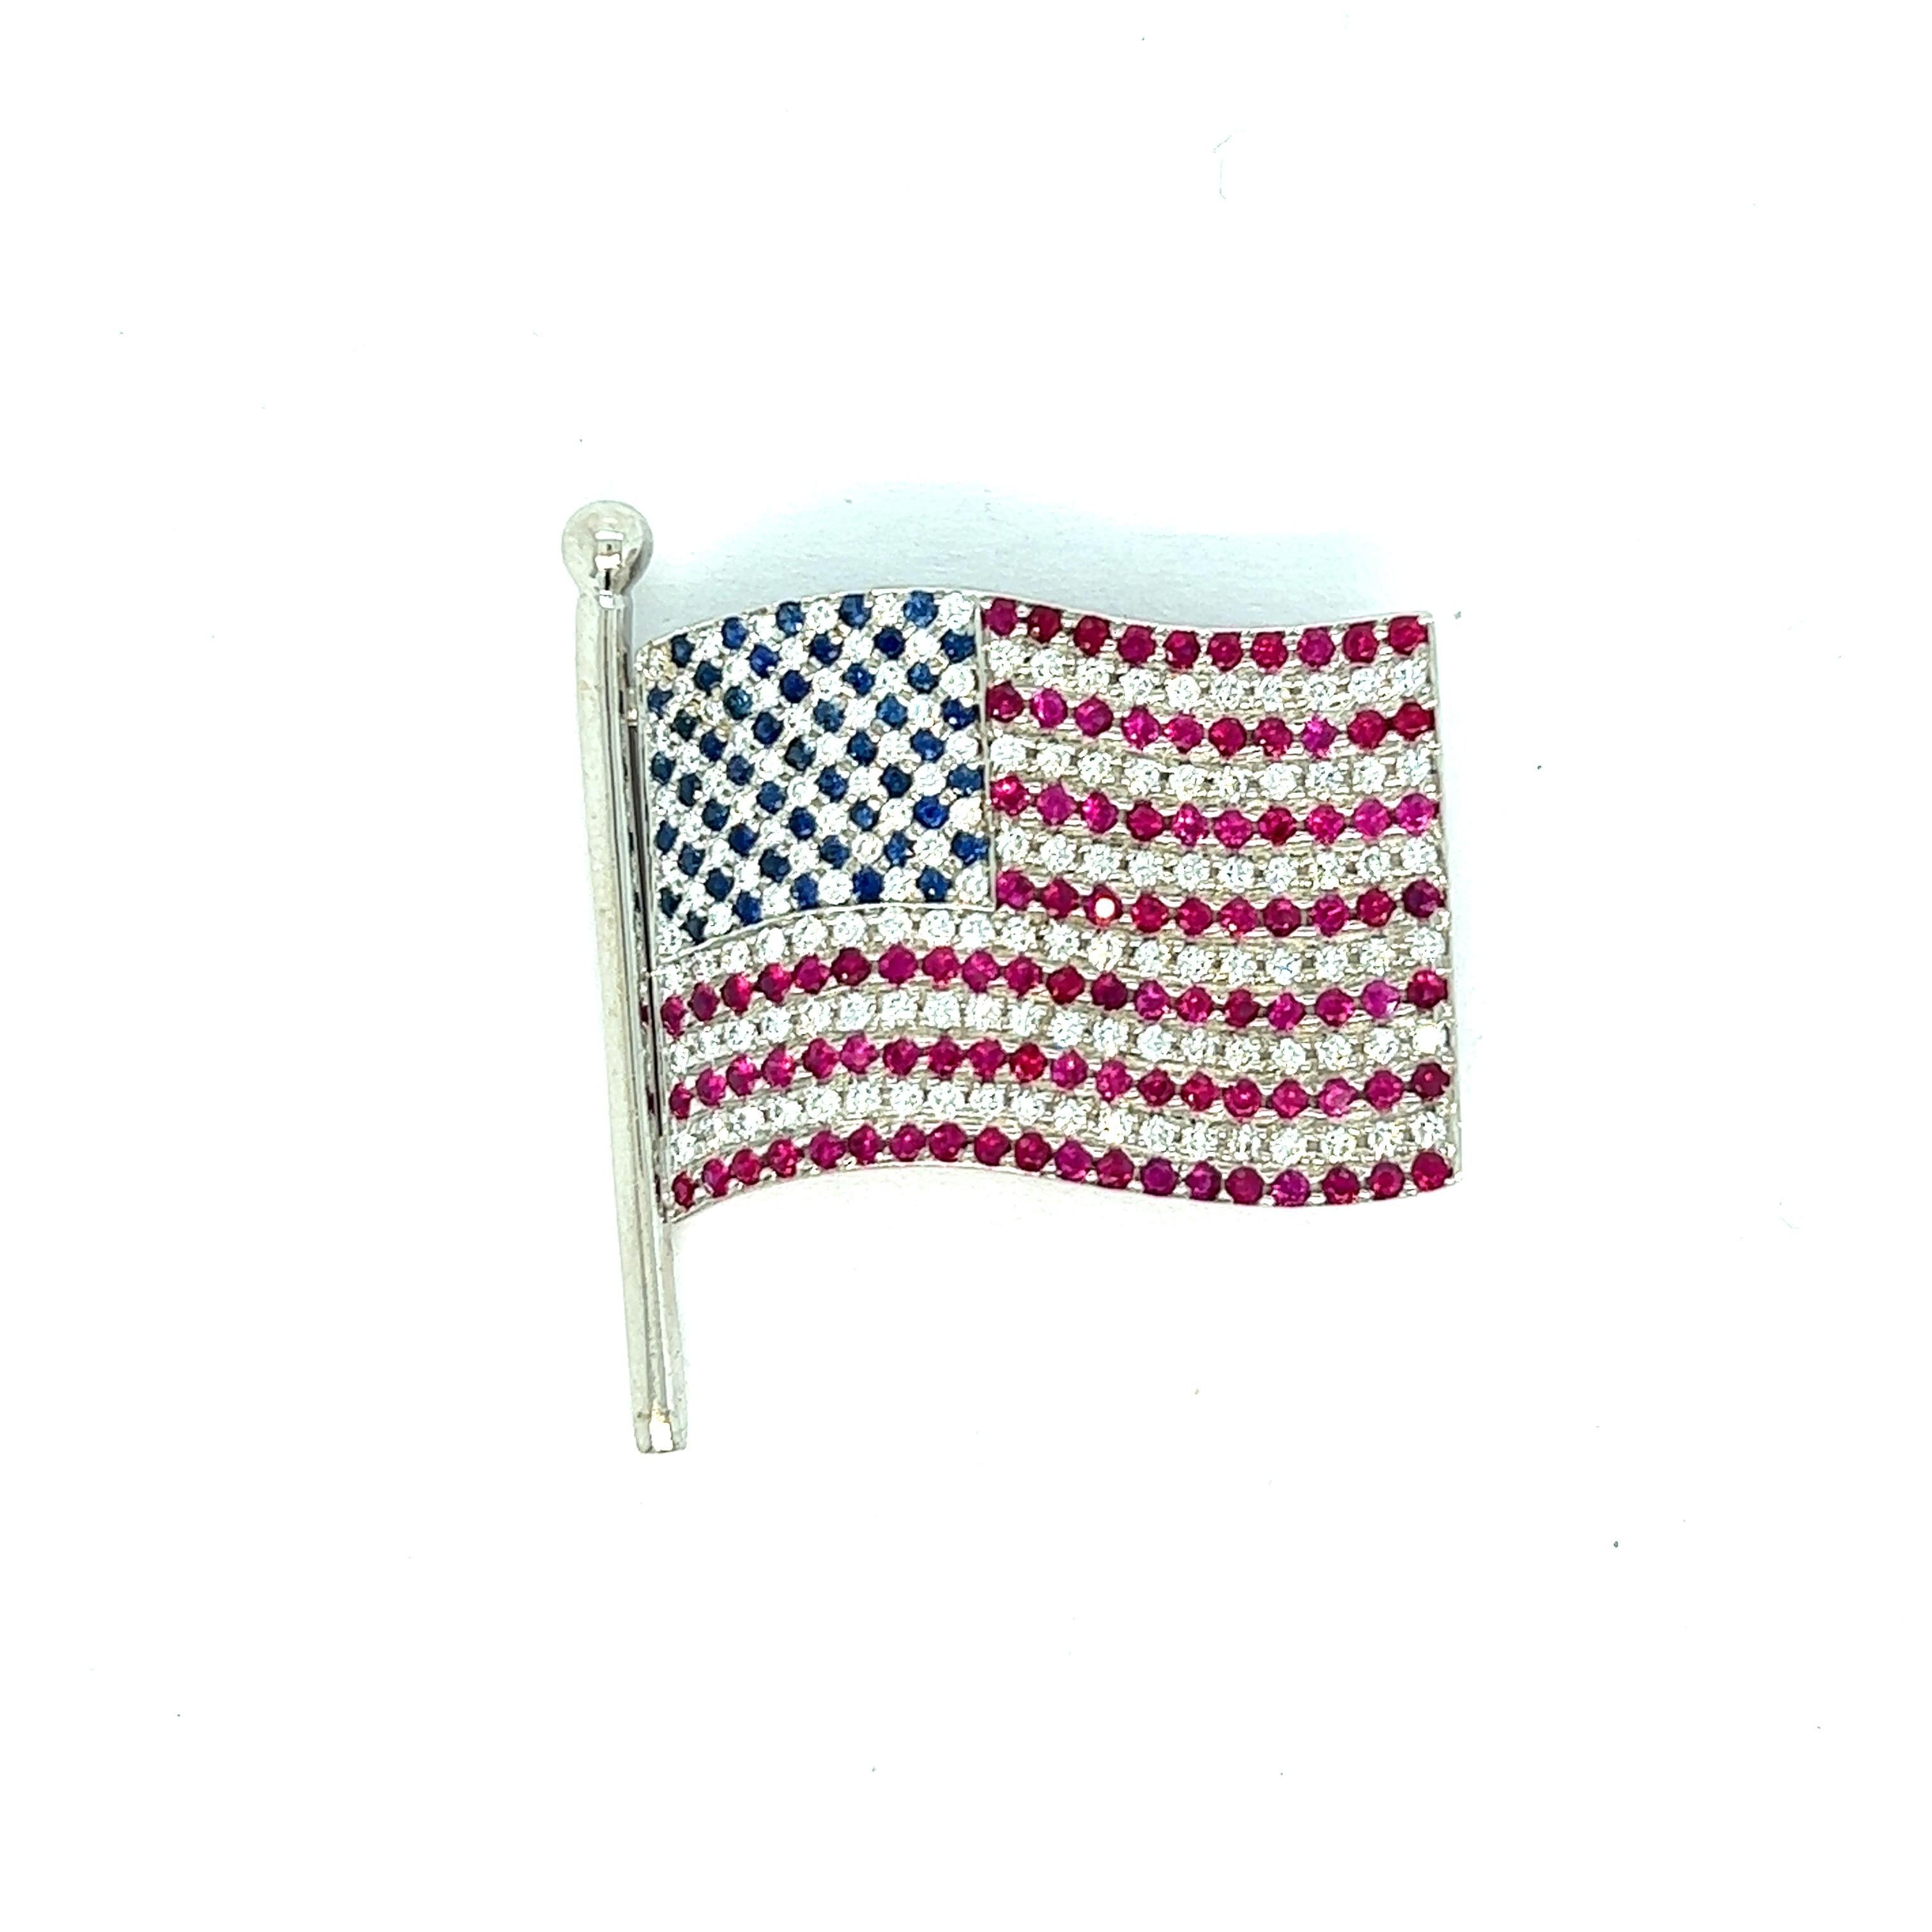 Broche drapeau américain

Diamants, saphirs et rubis de taille ronde sertis sur or blanc 18 carats ; marqué Carelle, 750

Taille : largeur 3 cm, longueur 3,5 cm
Poids total : 13,4 grammes